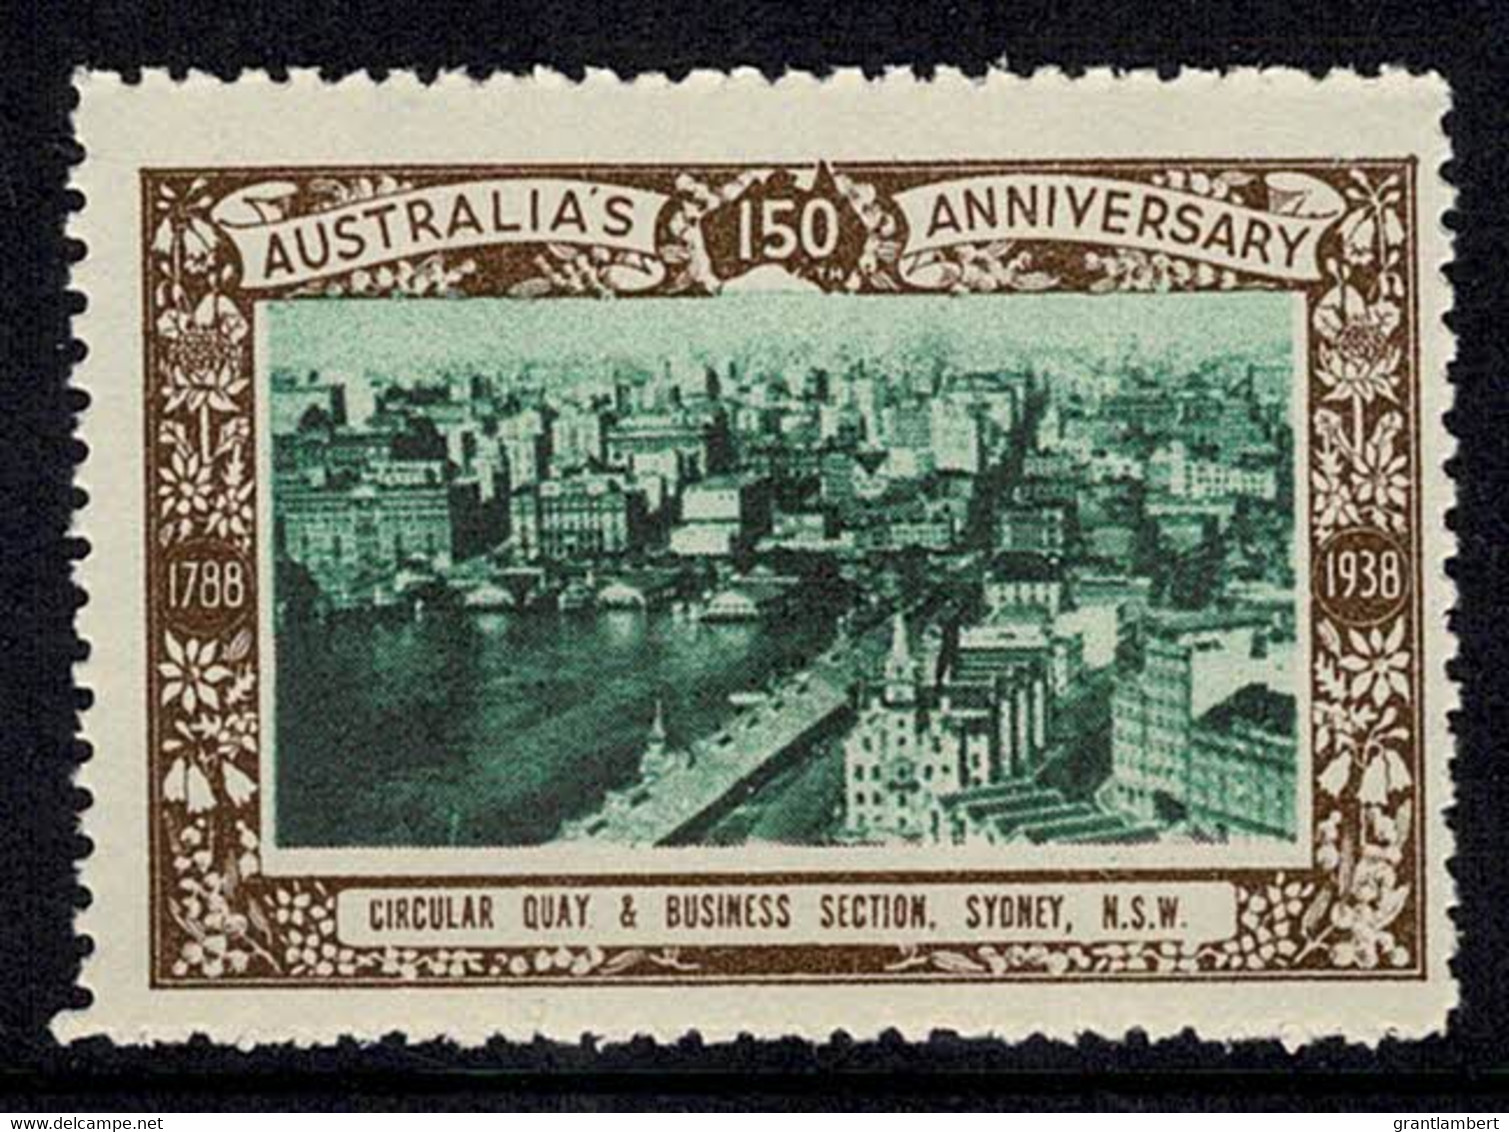 Australia 1938 Circular Quay & Business Section, Sydney - NSW 150th Anniversary Cinderella MNH - Werbemarken, Vignetten